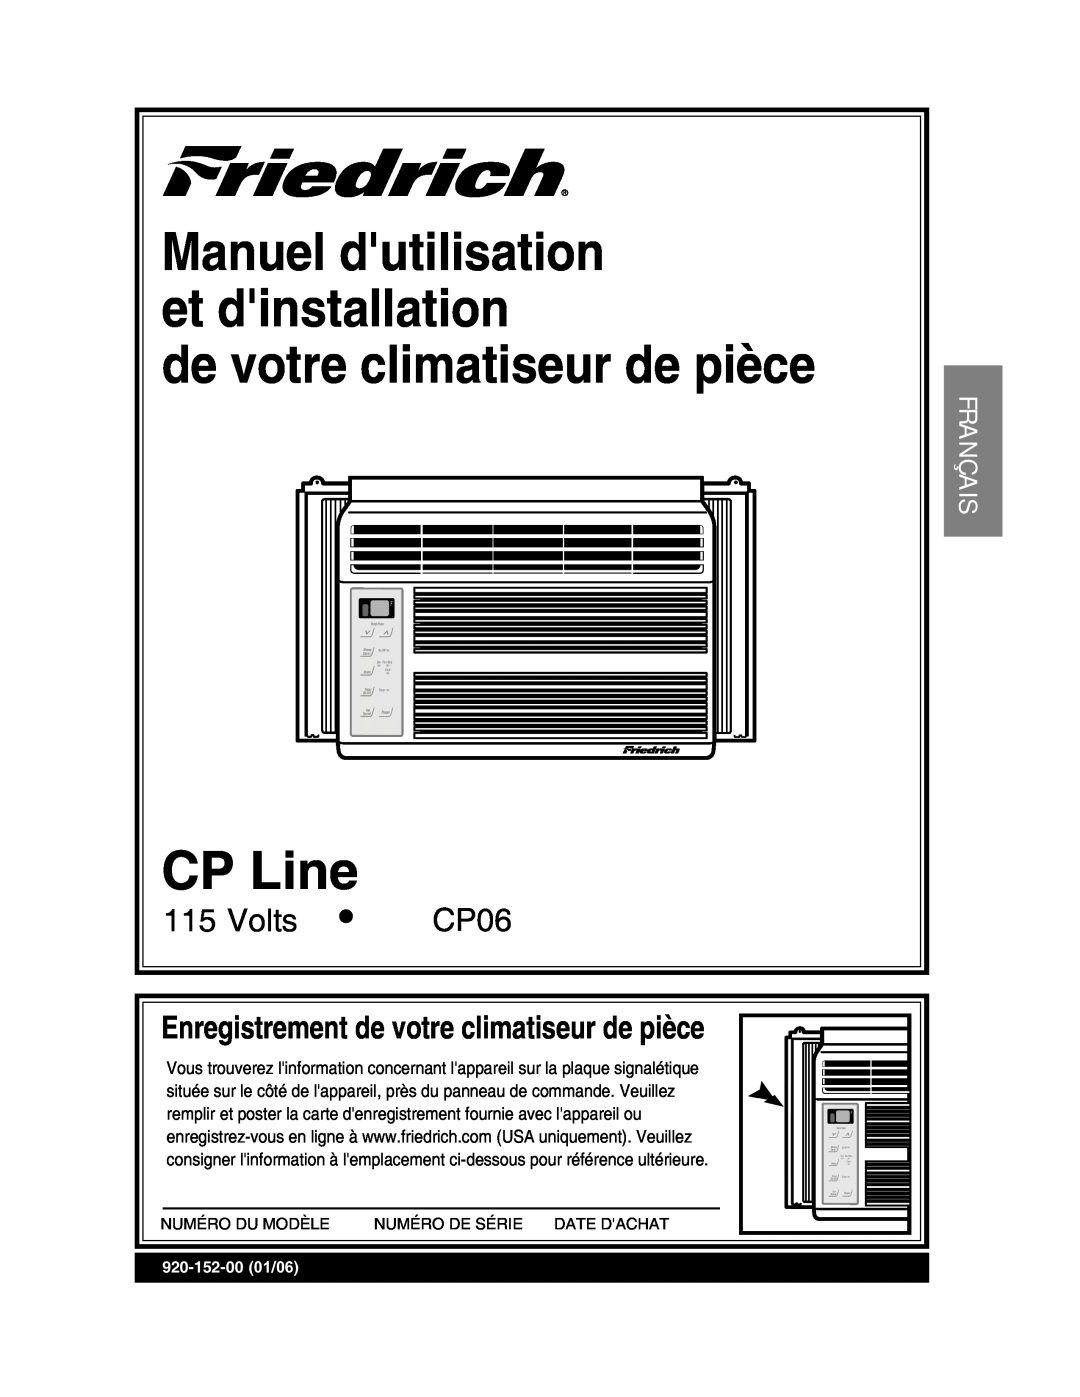 Friedrich CP06 manual Français, PtgikuvtgogpvFgXqvtgEnkocvkugwtFgRkâeg, 2.KPG, FgXqvtgEnkocvkugwtFgRkâeg 